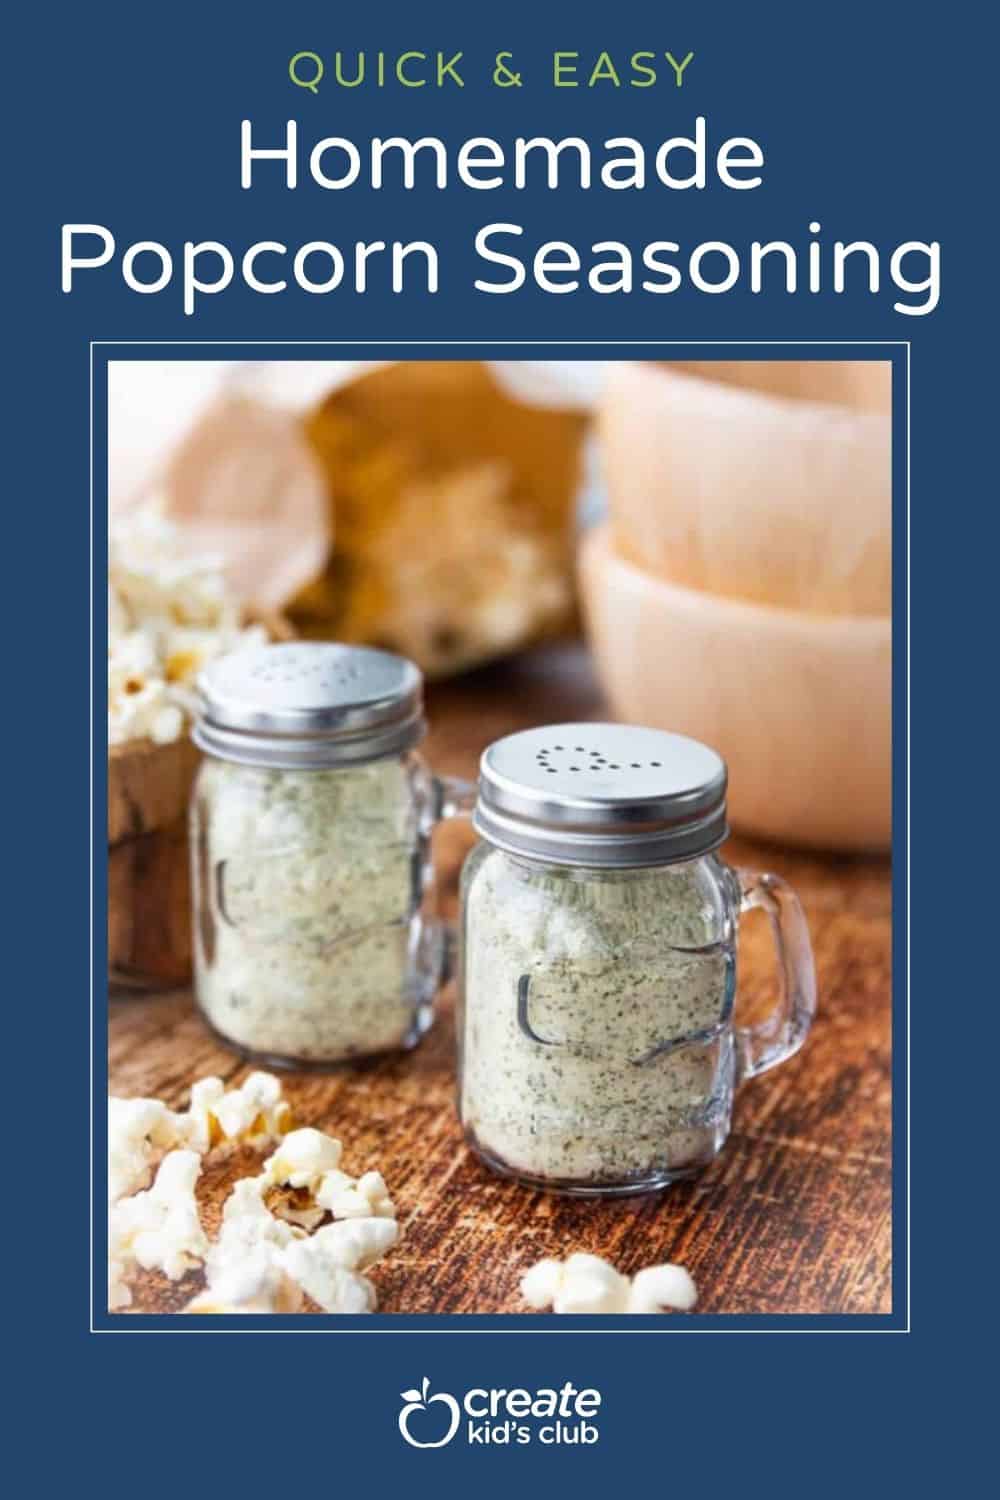 pin of popcorn seasoning